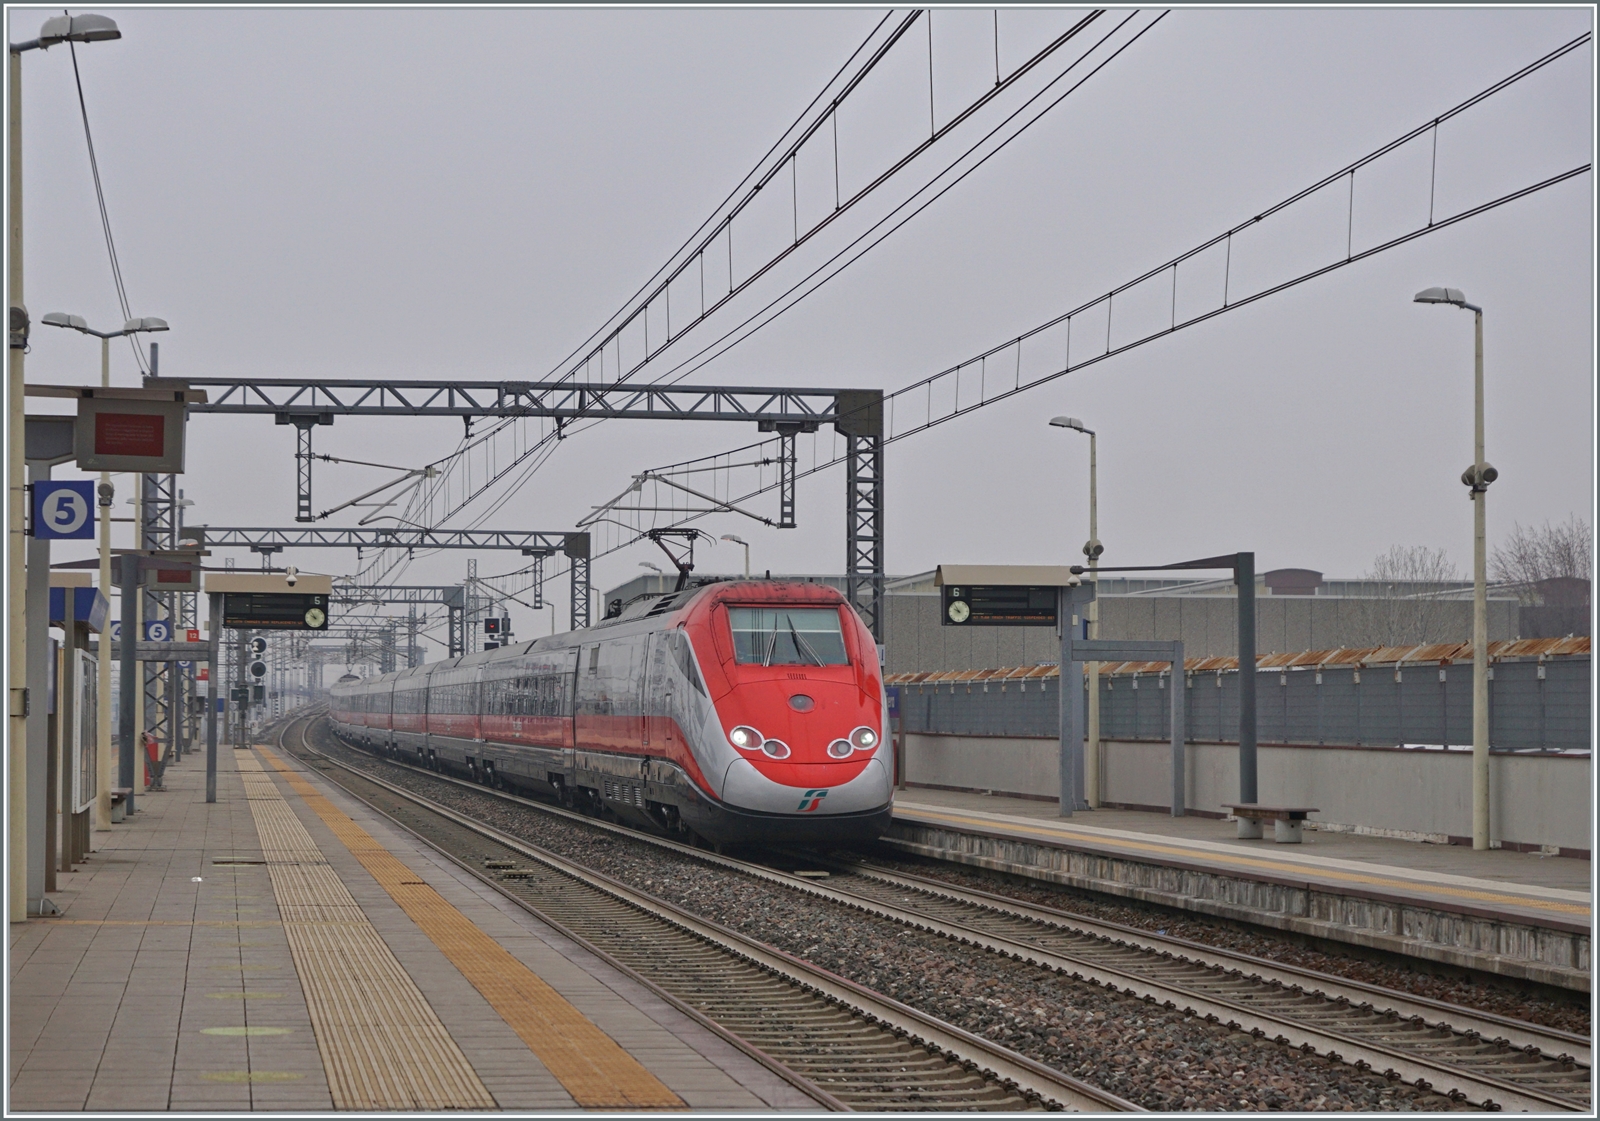 Ein FS Trenitalia ETR 500 von Torino kommend erreicht den Bahnhof Rho Fiera.

24. Feb. 2023